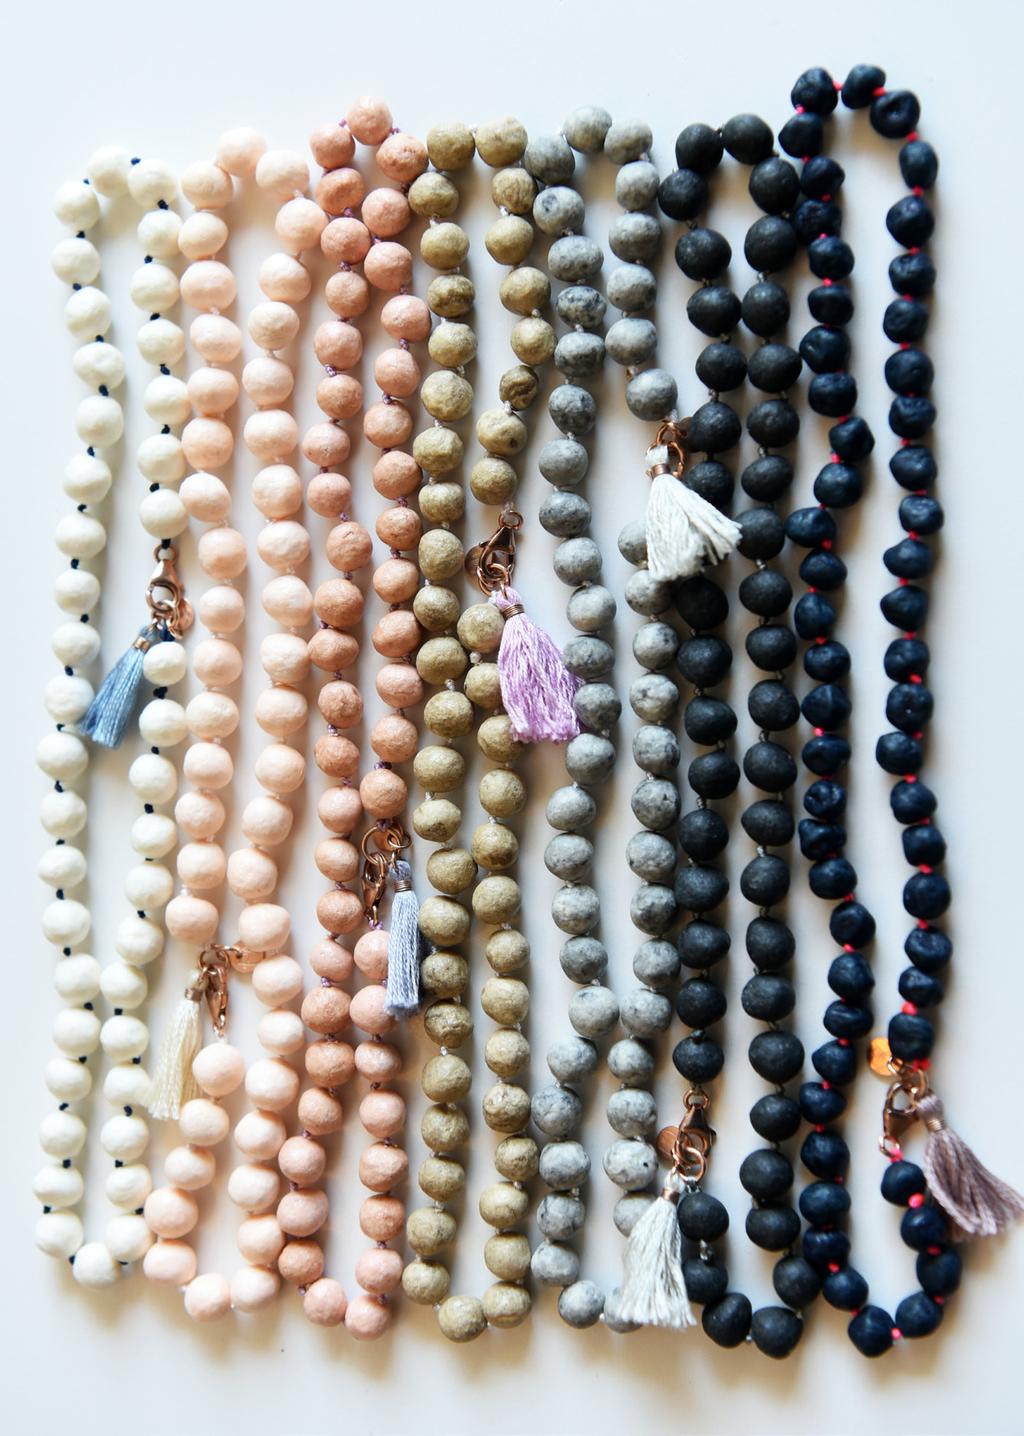 Collezione Papier Machè - Collane Abbiamo rivisitato la classica collana di perle e ne abbiamo fatto un cult Collana di piccole perle in Papier Machè in due misure: cm 42 e cm 88.